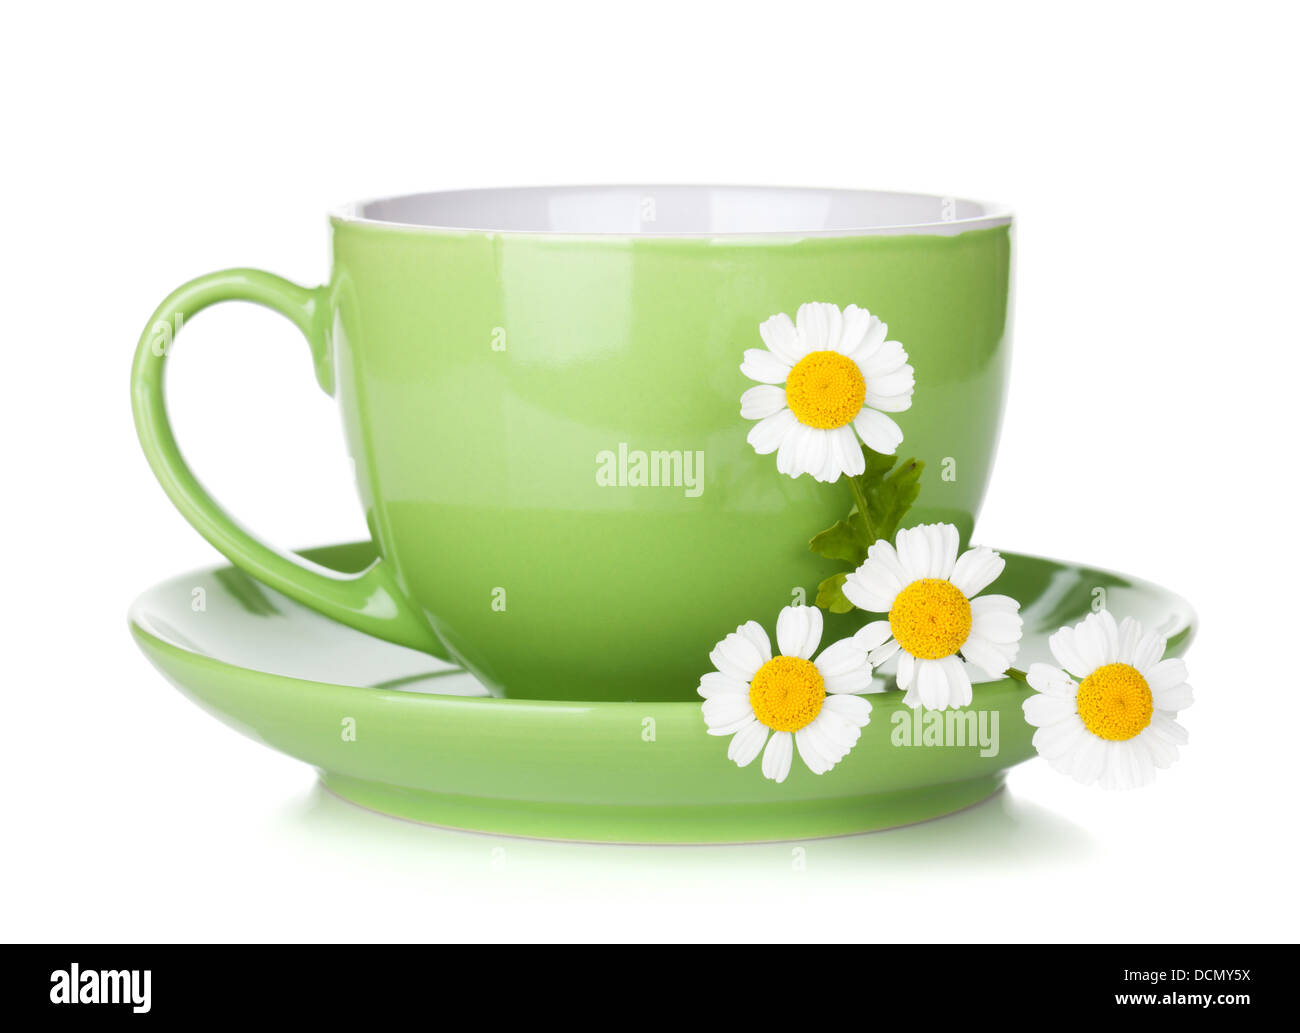 Tasse de thé vert avec camomille. Isolé sur fond blanc Banque D'Images